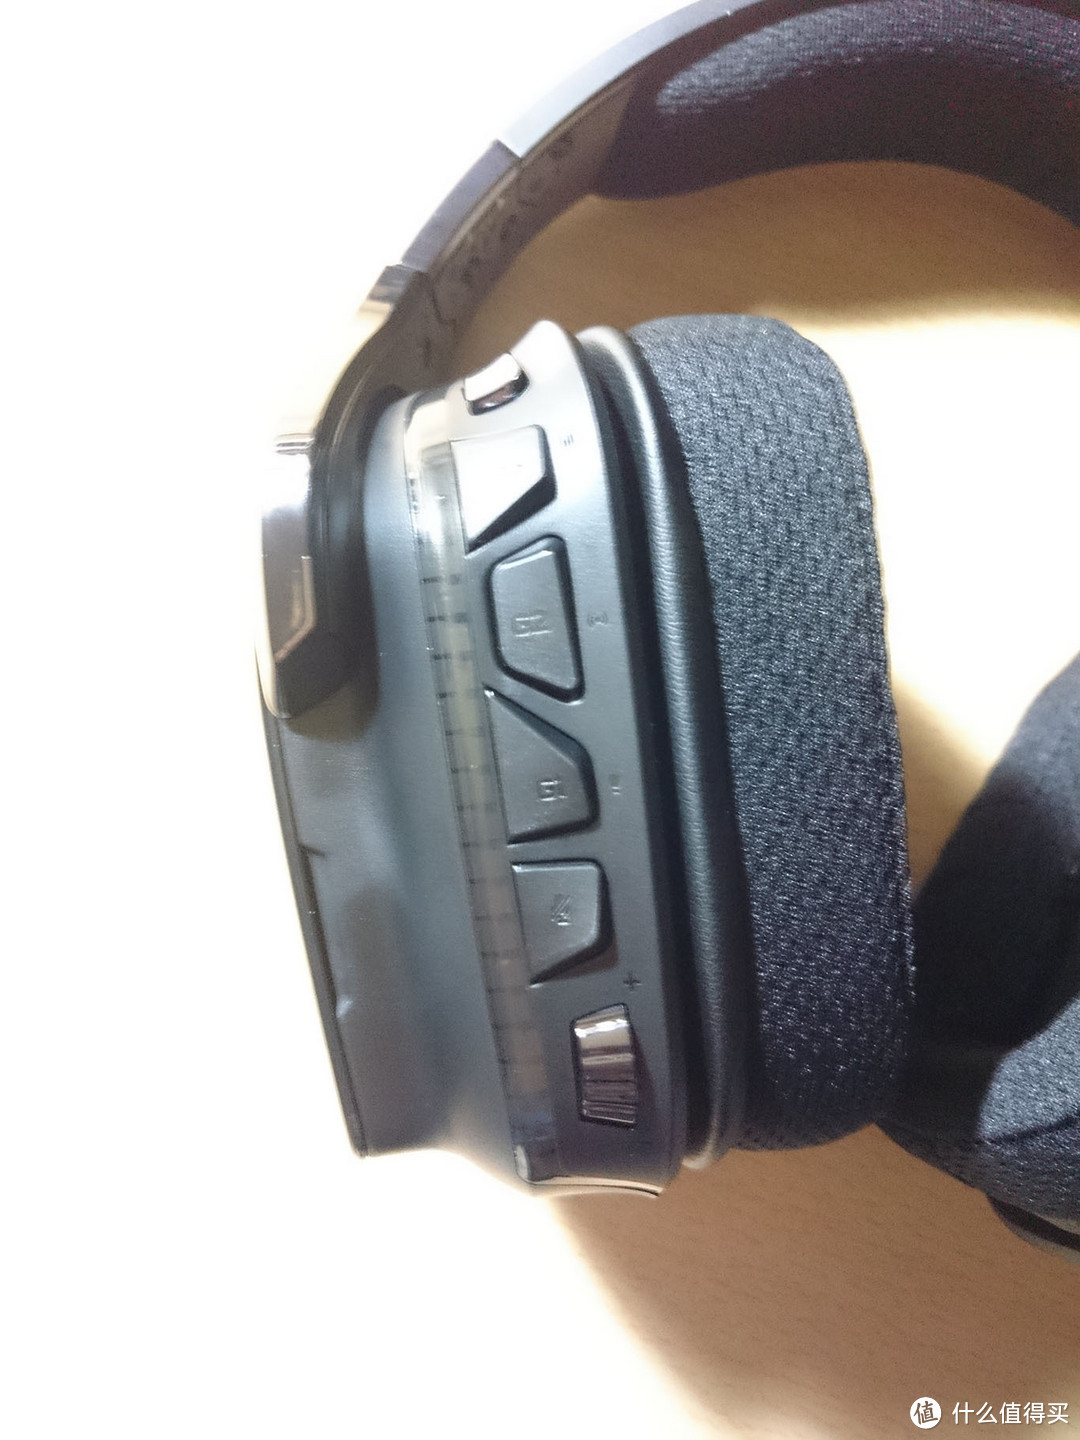 罗技G633游戏耳机开箱评测